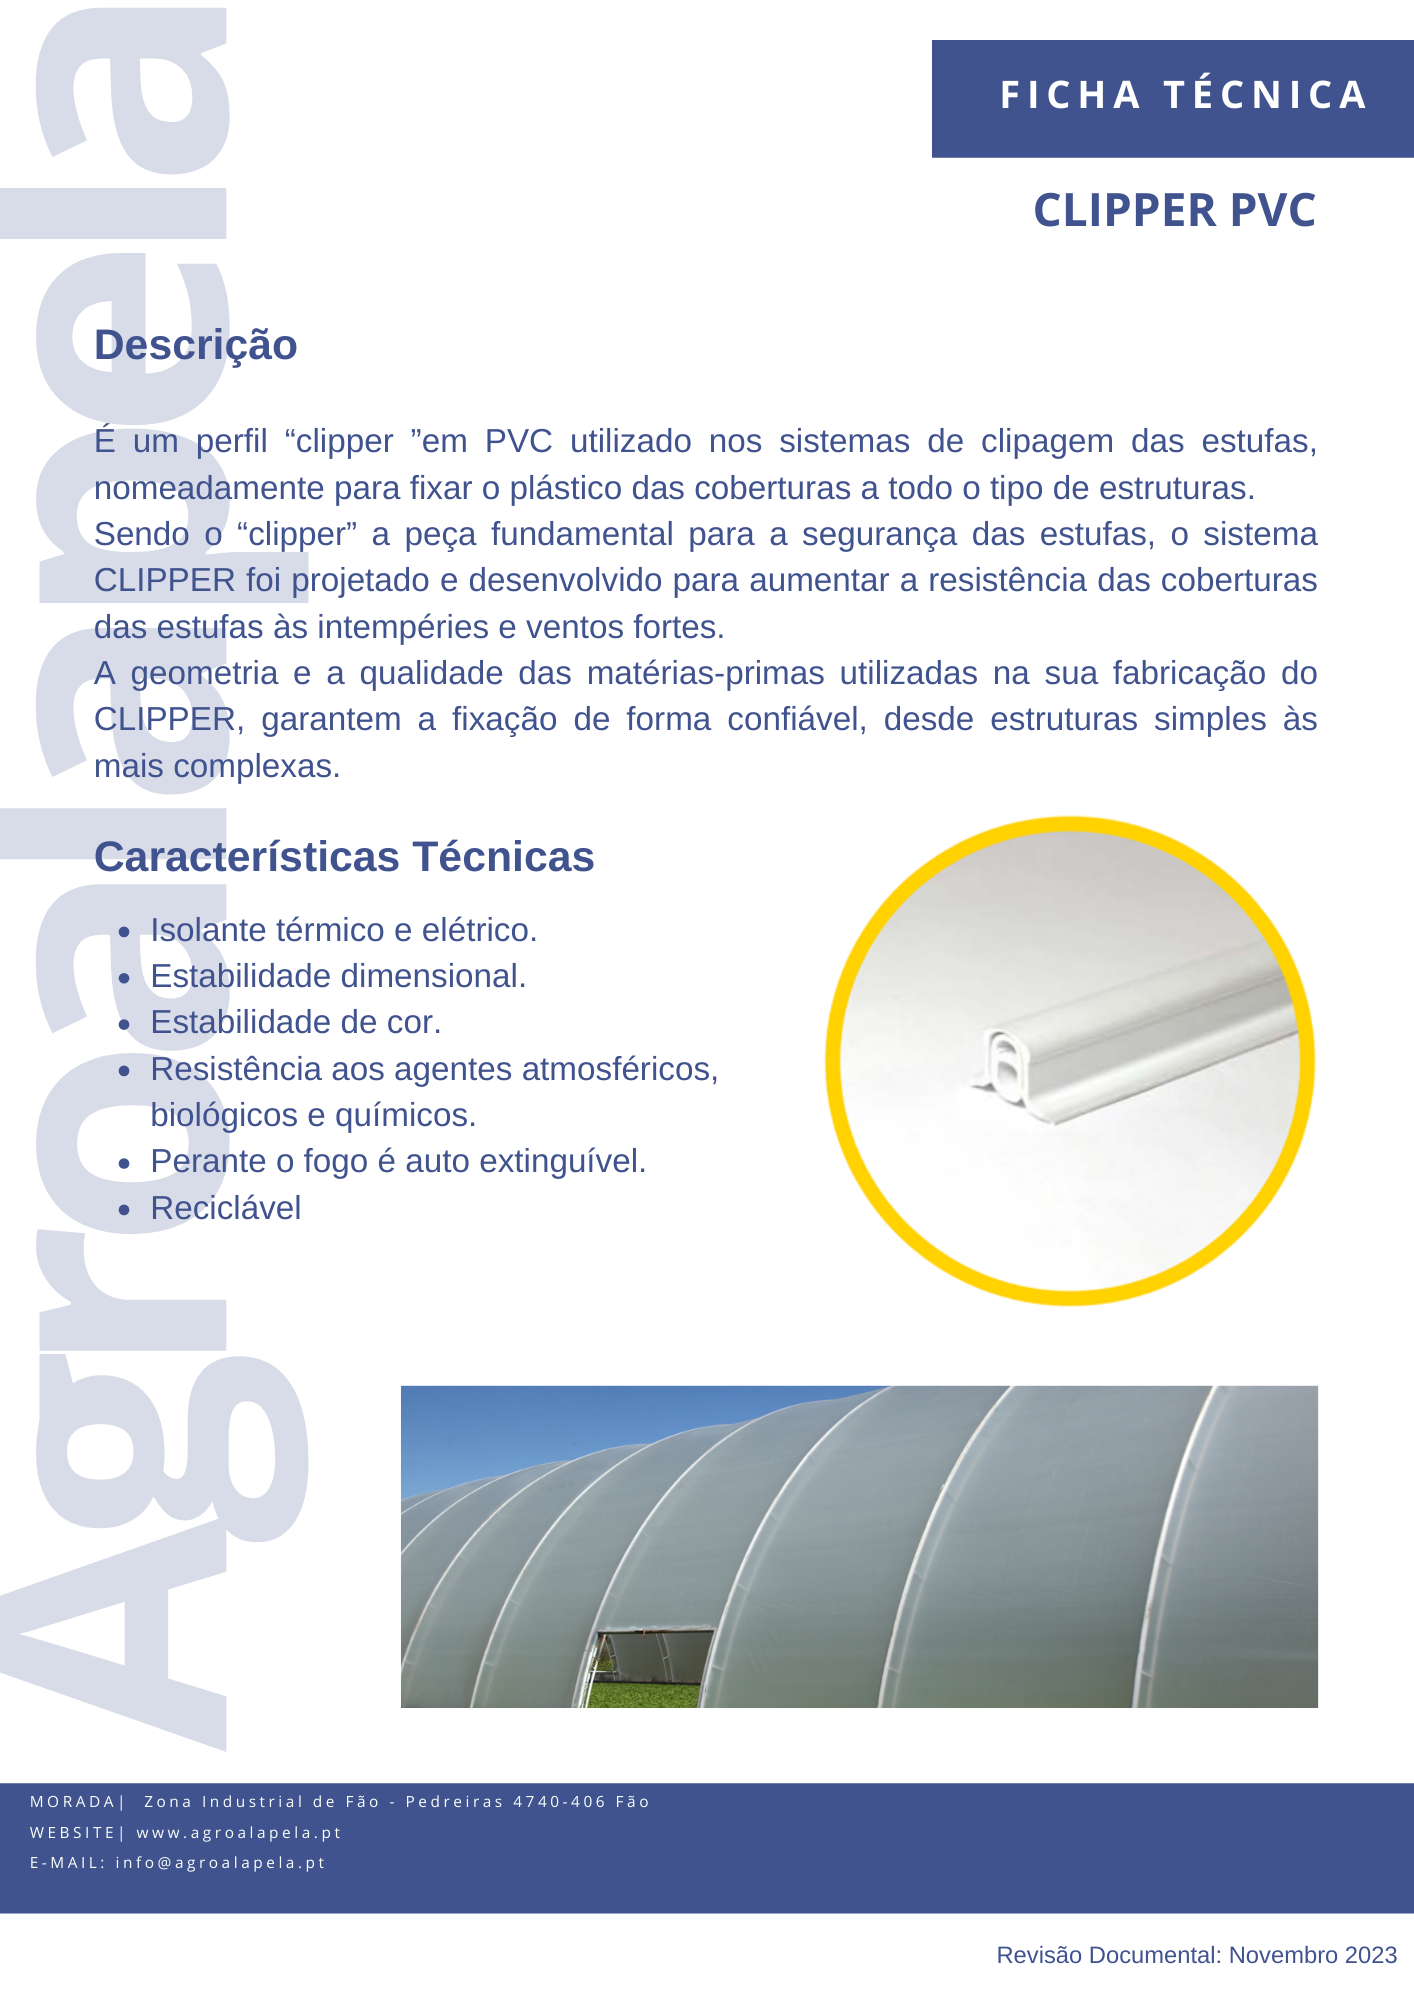 Cliper PVC